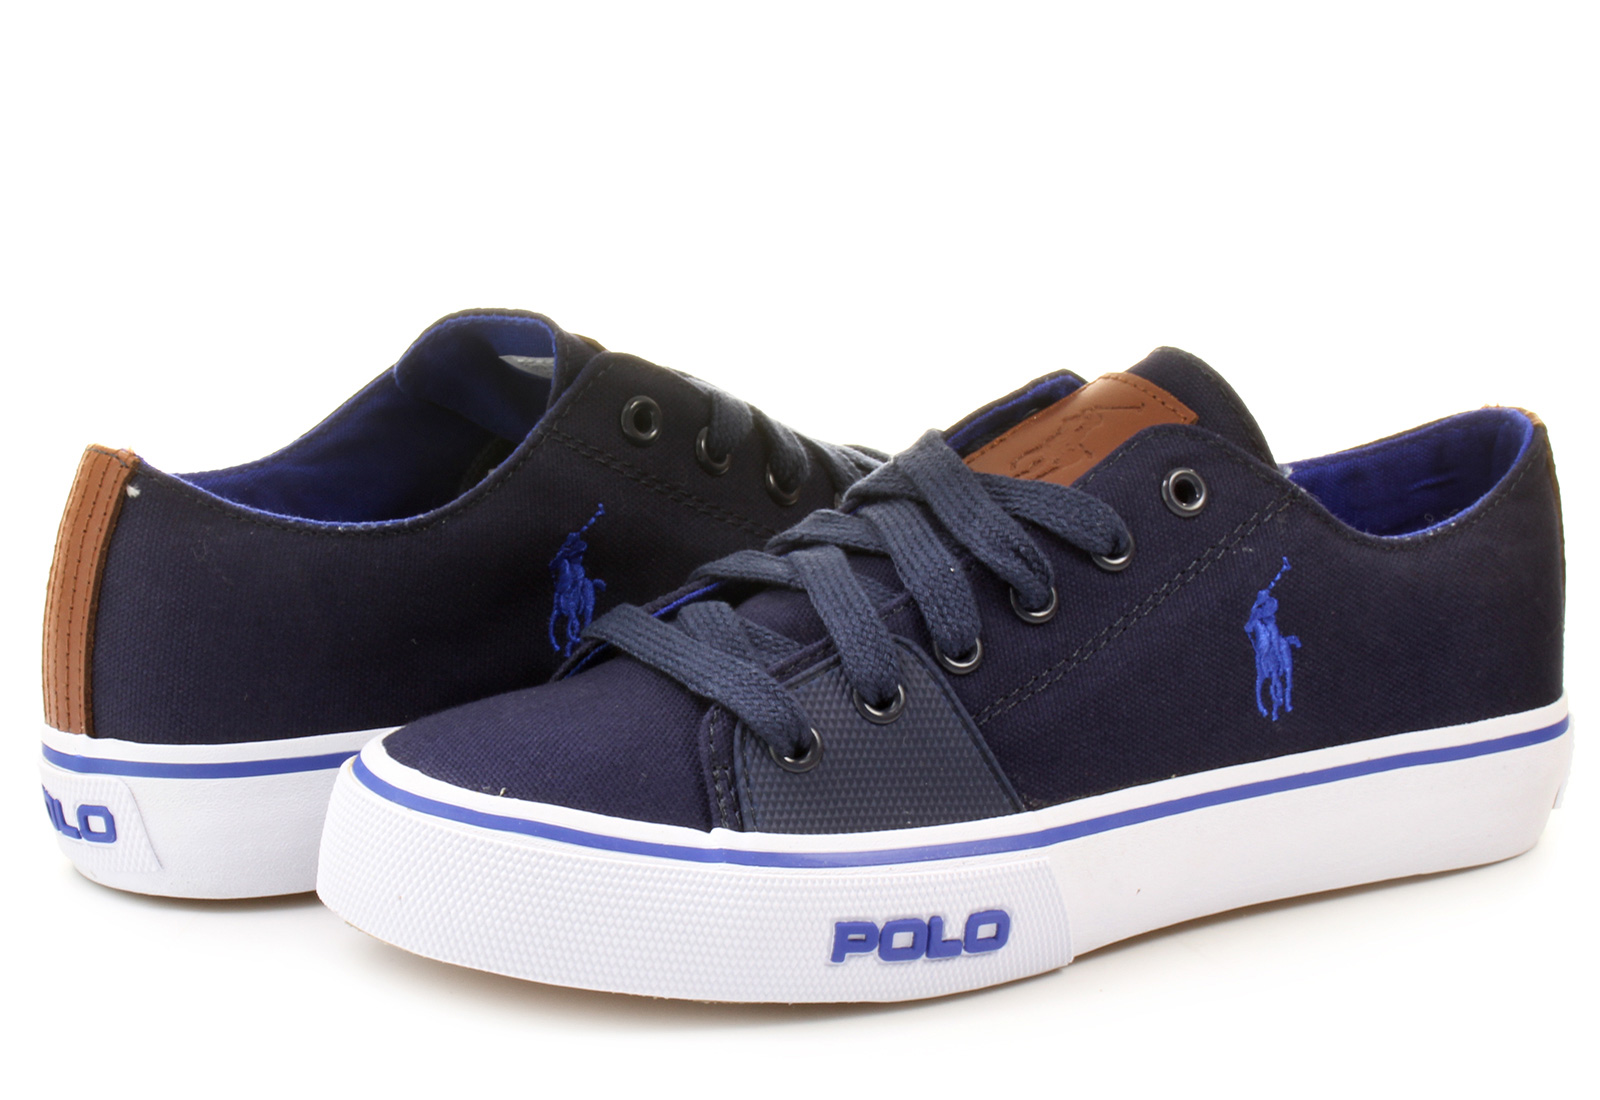  Polo  Ralph Lauren Sneakers Cantor Low ne 276 c w4e5w 